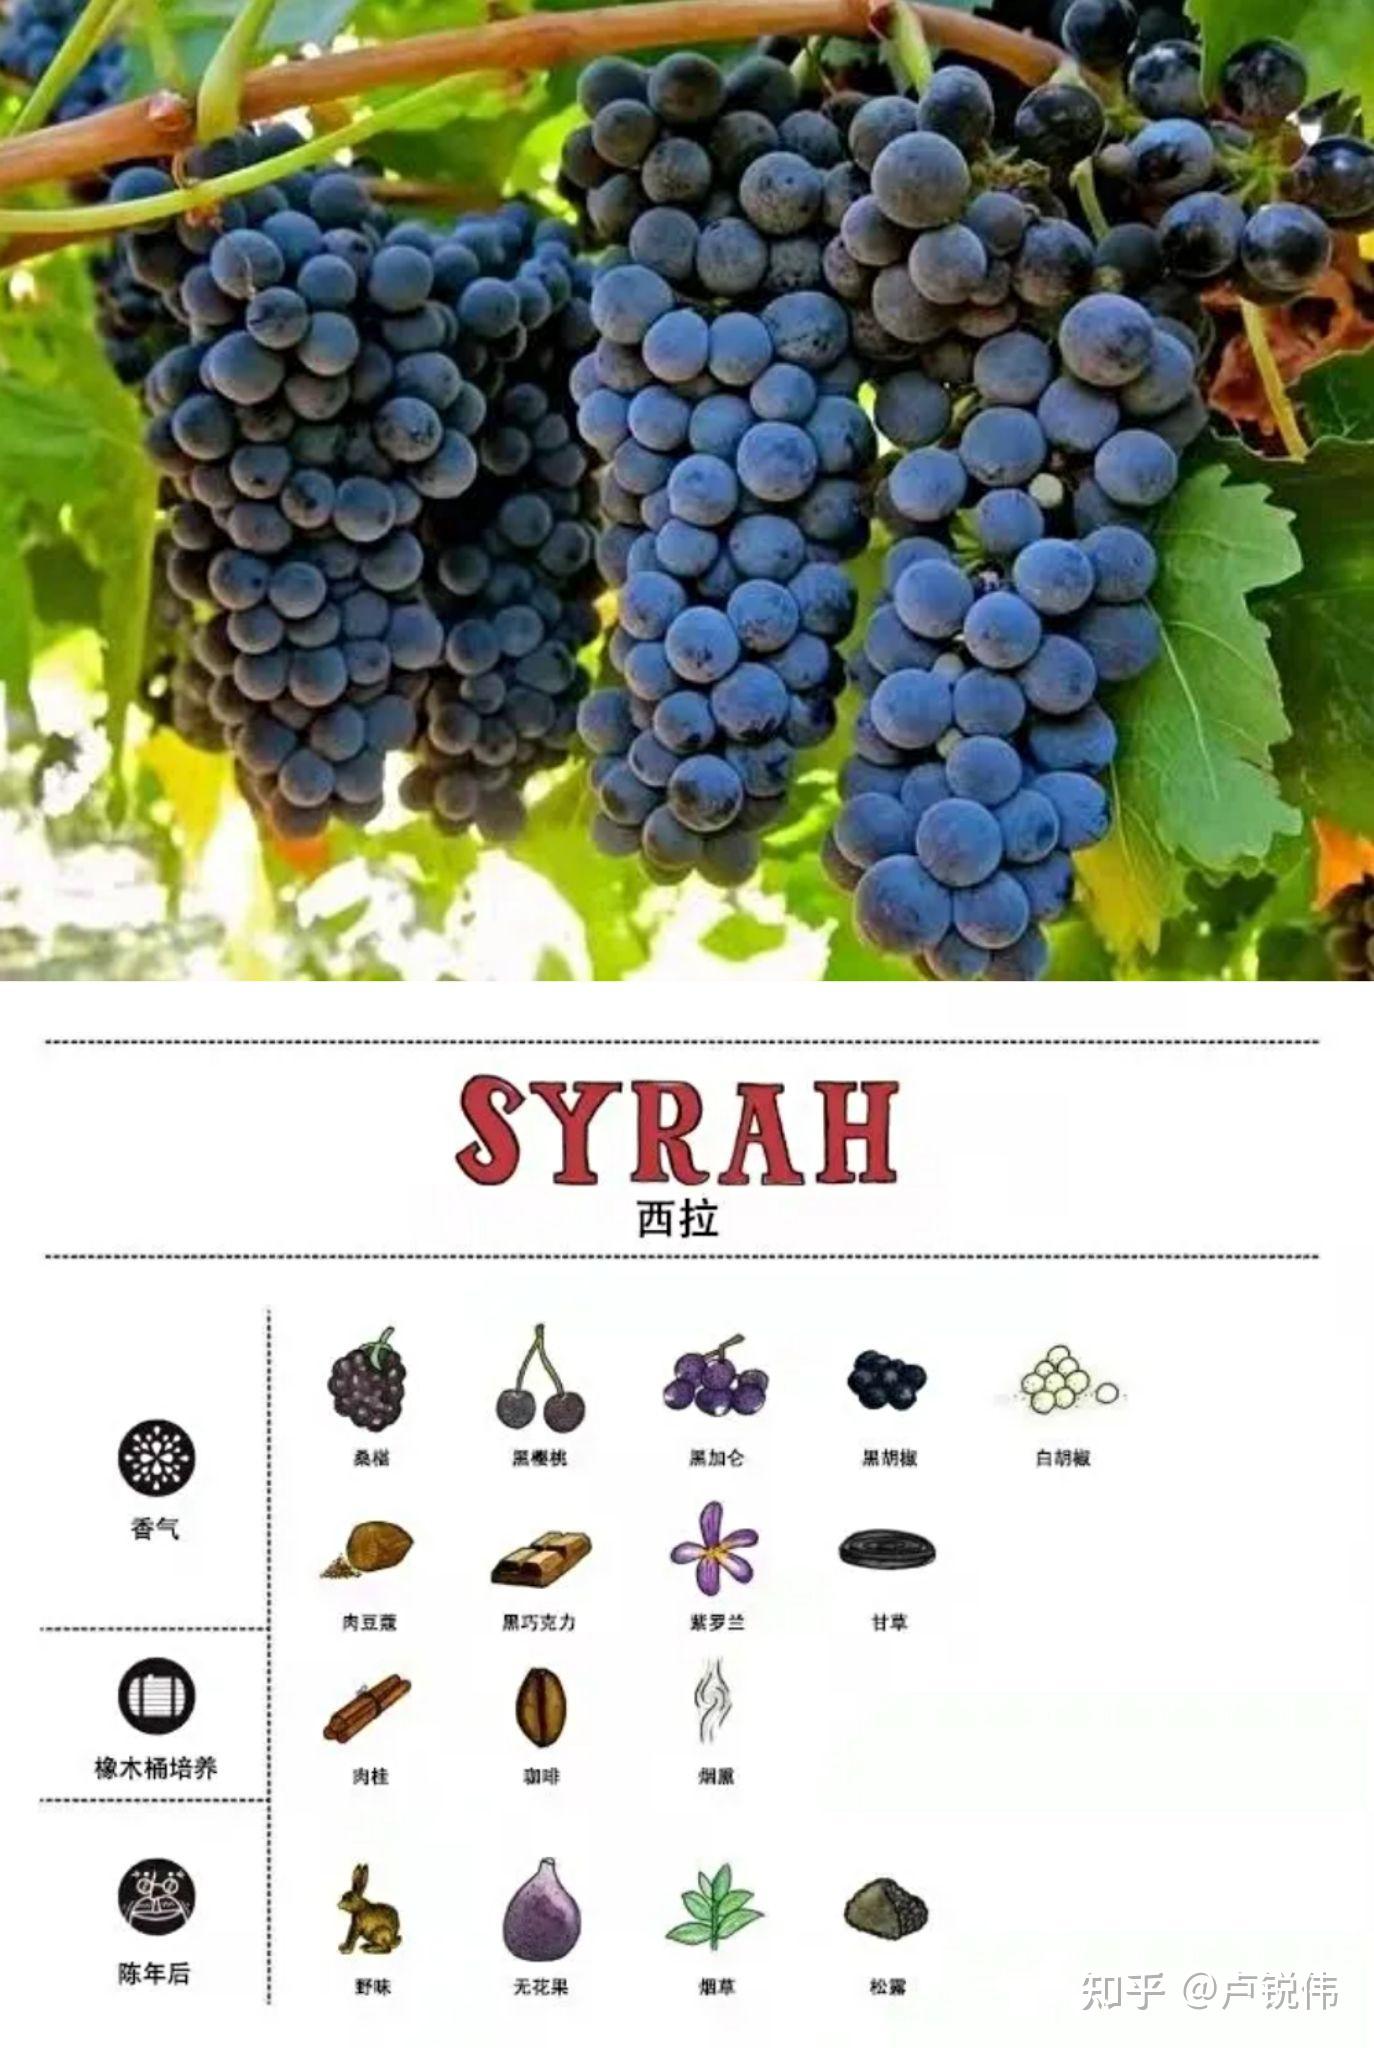 葡萄品种有哪些品名图片